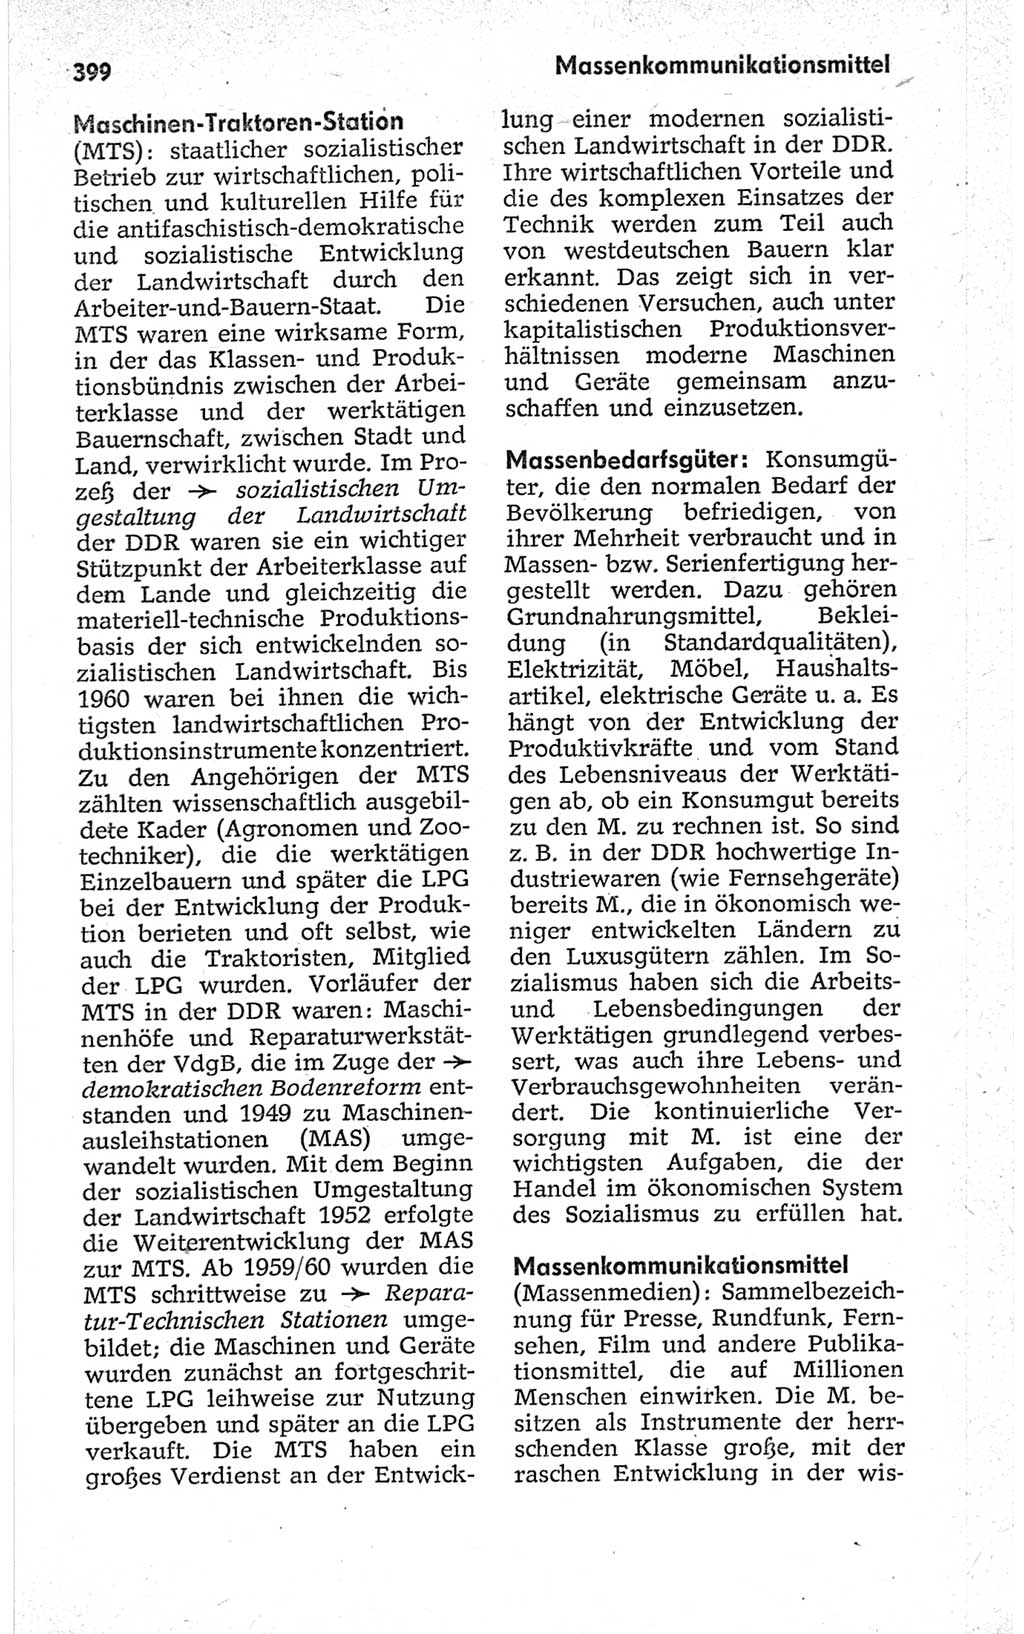 Kleines politisches Wörterbuch [Deutsche Demokratische Republik (DDR)] 1967, Seite 399 (Kl. pol. Wb. DDR 1967, S. 399)